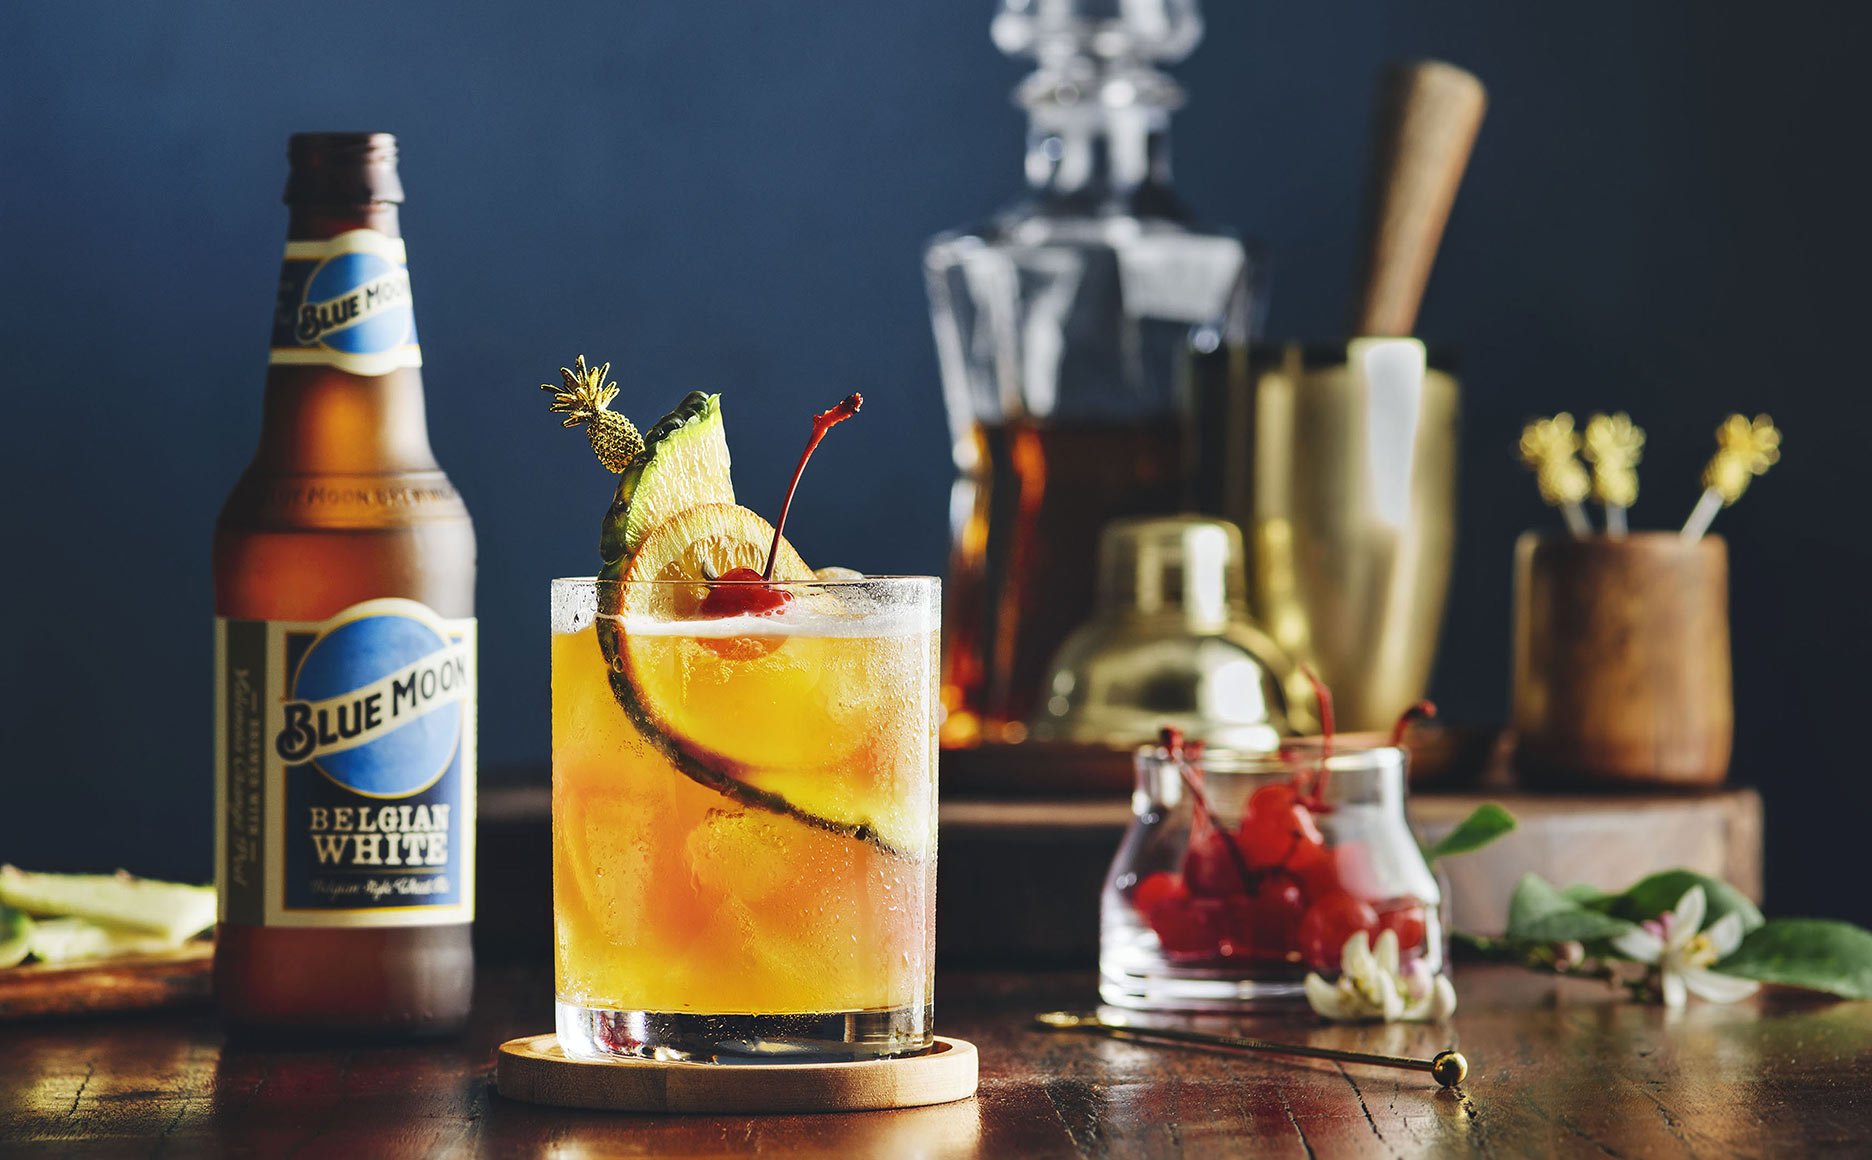 Rum-Swizzle-cocktail-beer-ad-blue-moon-tropical.jpg